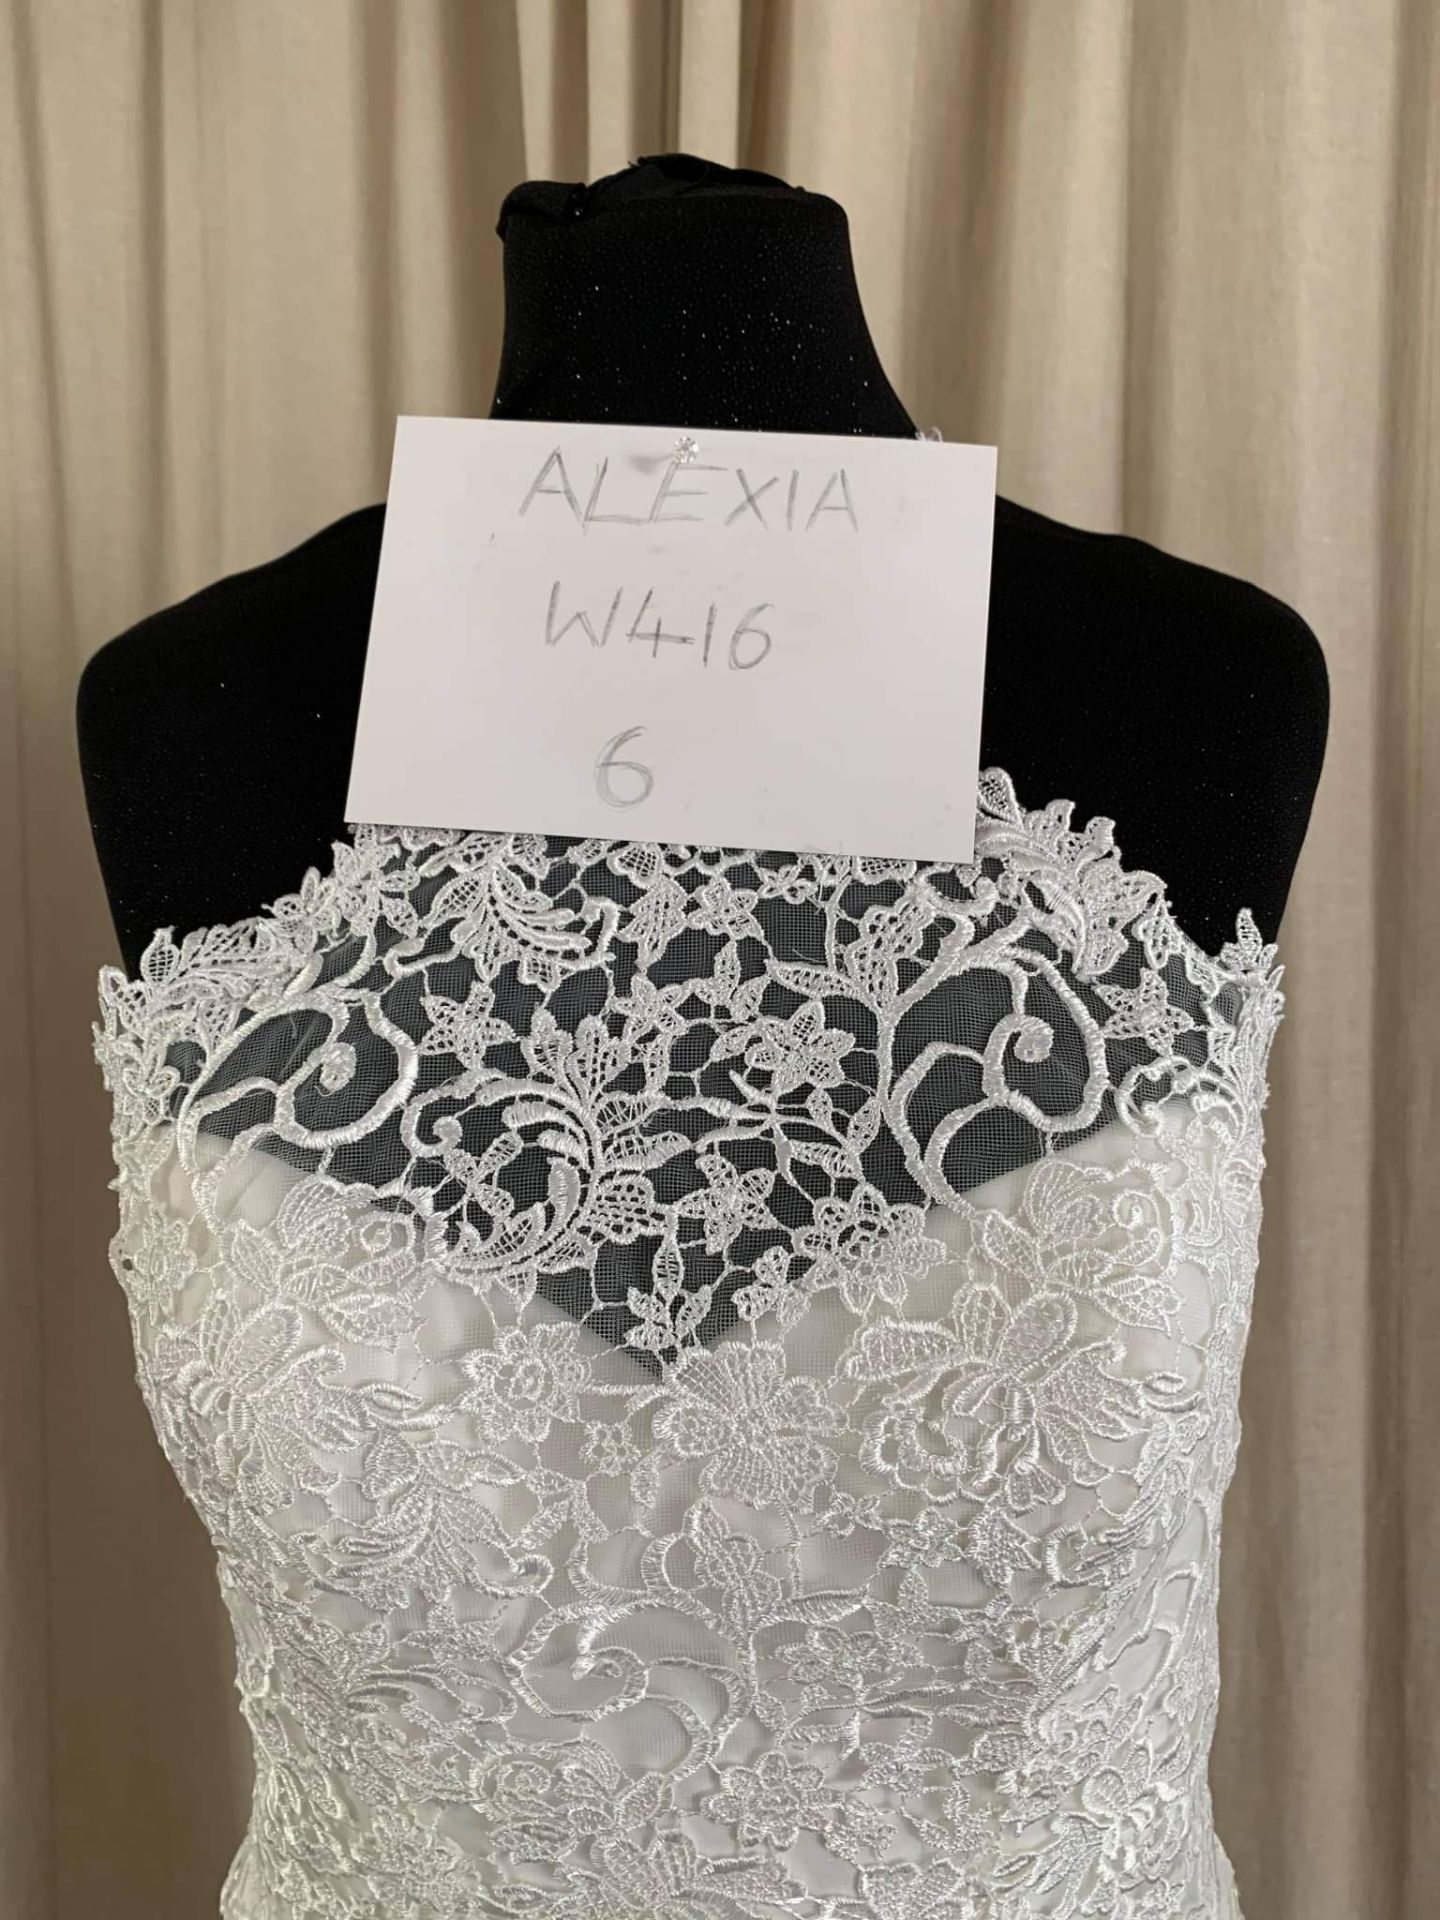 Alexia Wedding Dress Style W416 Size 6 - Image 3 of 5